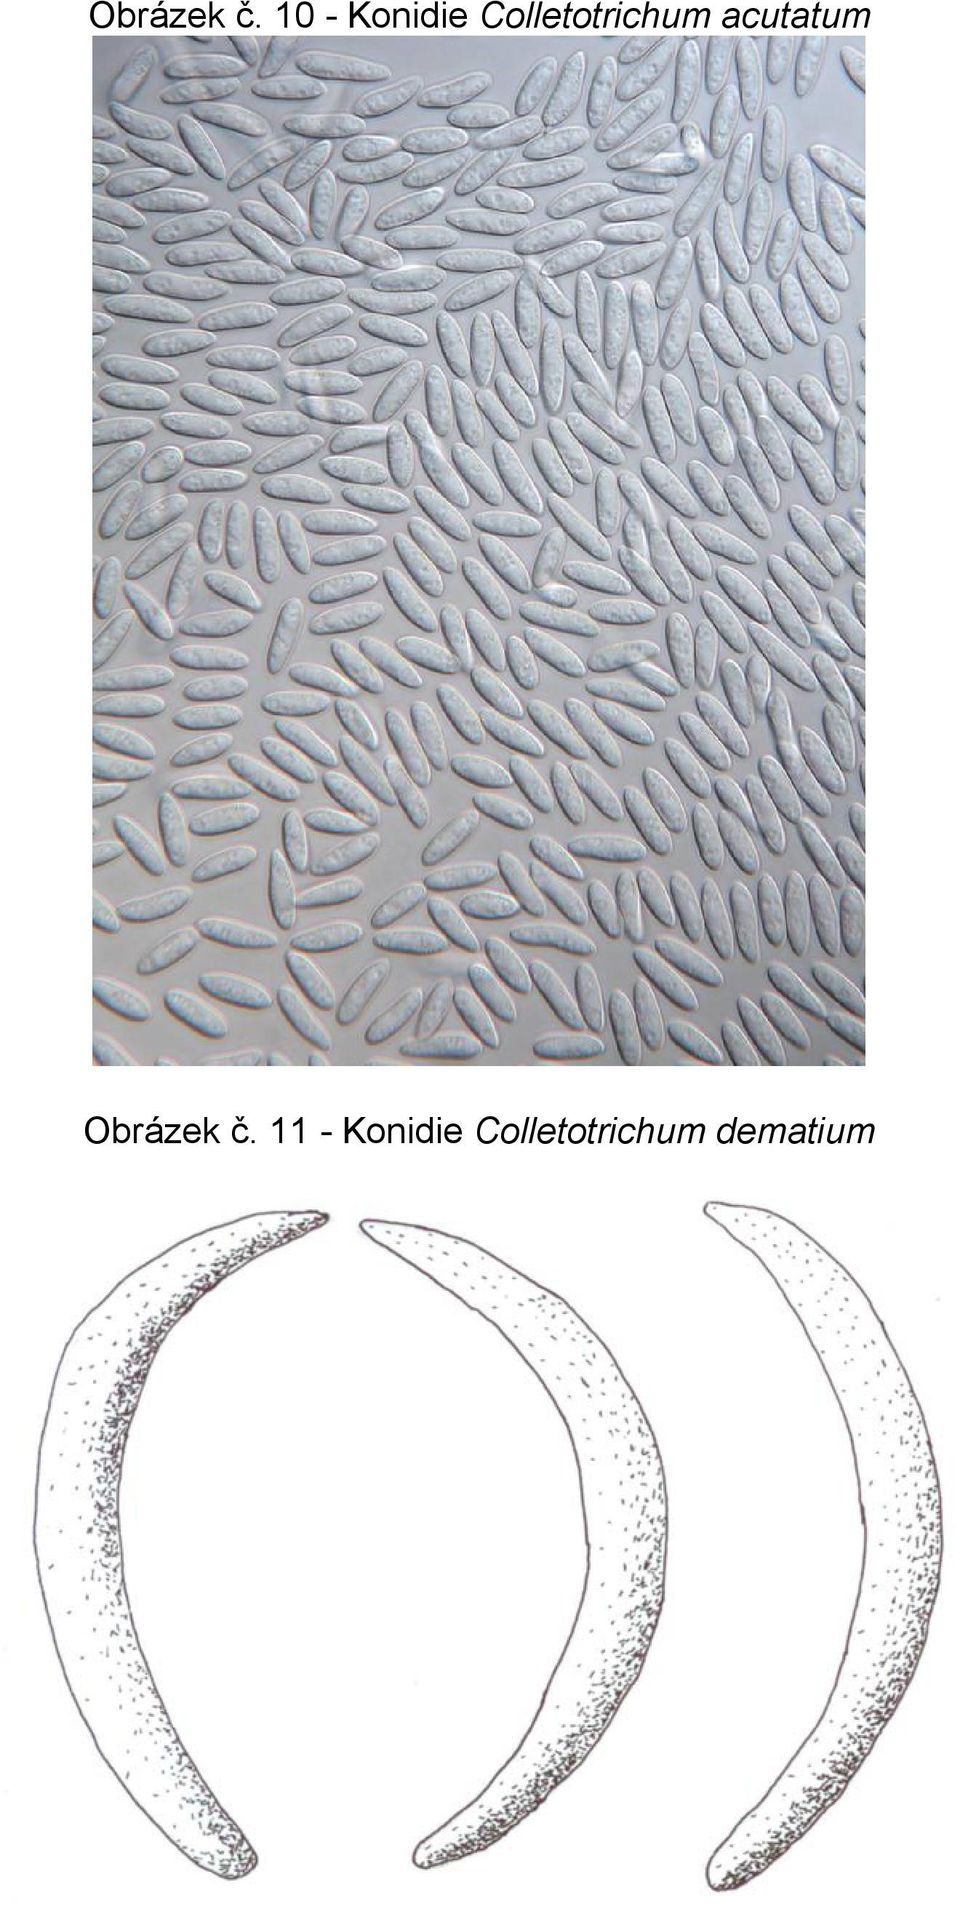 Colletotrichum acutatum